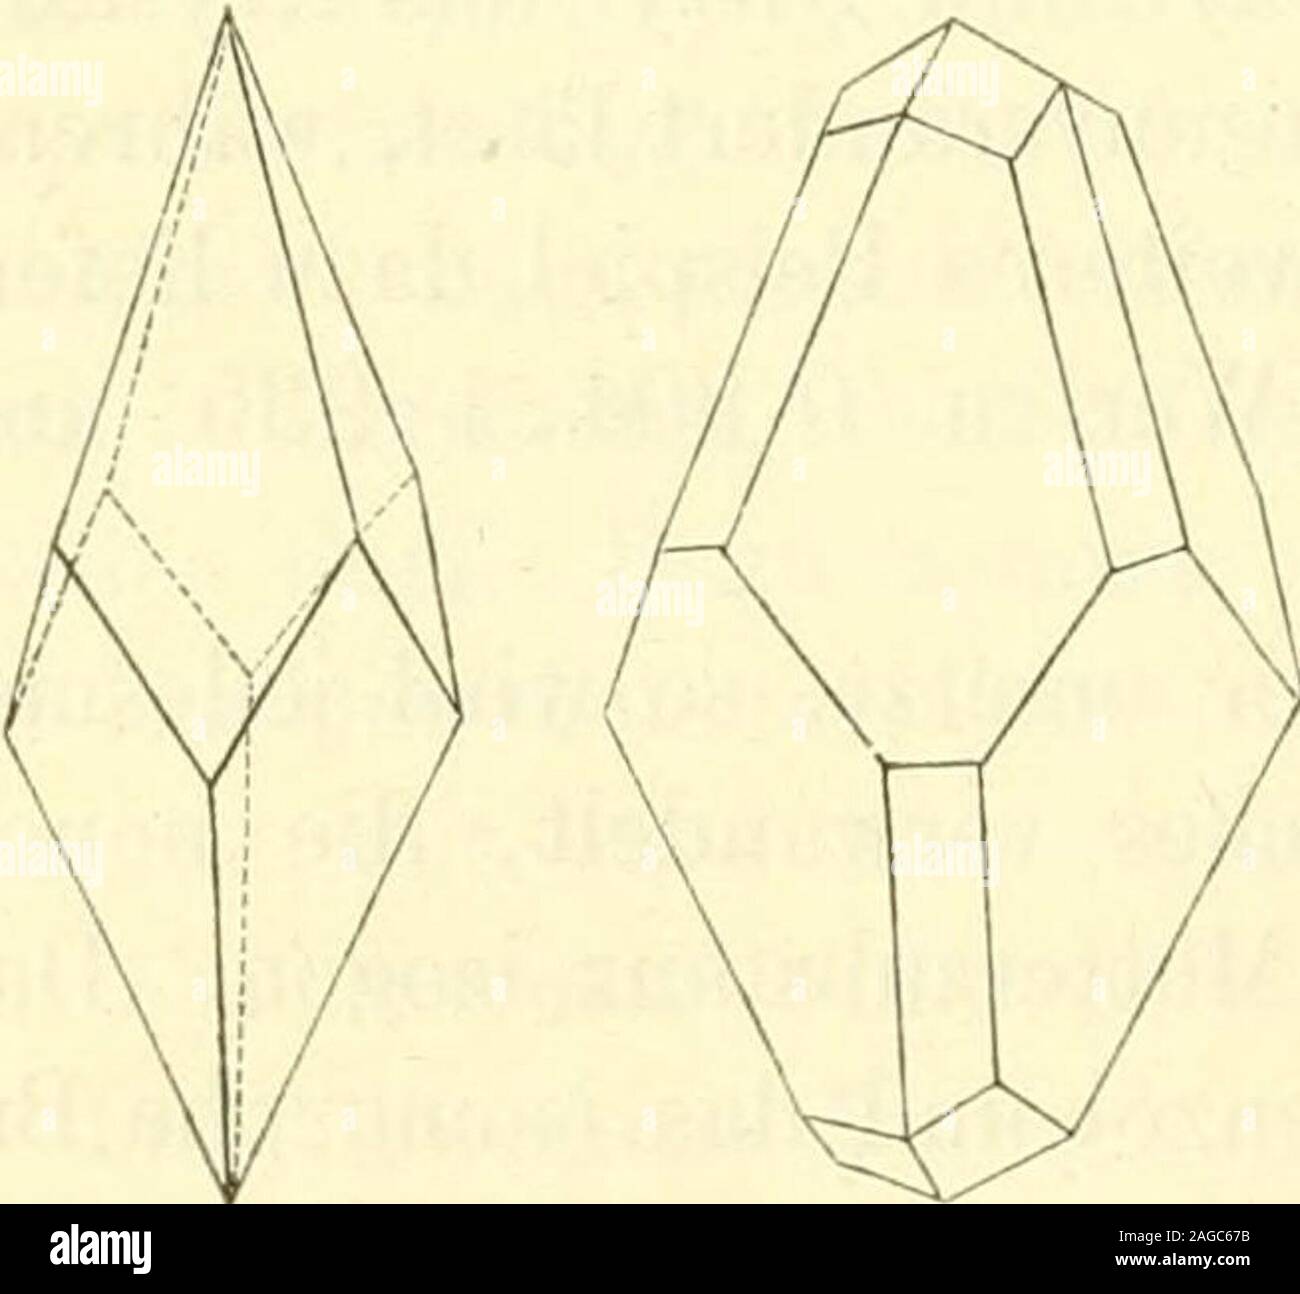 . Lehrbuch der allgemeinen chemie. vielseitiger Körper ist der regulär krystallisierendeSalmiak, welcher, indem er sich hemiedrisch und dabei verzerrt ent-wickelt, sowohl rhomboedrisch hexagonale, wie auch quadratische For-men nachahmt. Schon 1828 hat Marx Salmiakkrystalle von quadratischem Habitus,in Form ditetragonaler Pyramiden beobachtet, die er auch richtig auf unvollständig ausgebildete Ikositetraederzurückführte. Später, 1850, hatte C. F.Naumann *) Gelegenheit, derartige Formen,welche sich bei der Salmiakdarstellung ausGaswasser im Grossen gebildet hatten, ge-nauer zu untersuchen, und s Stock Photo